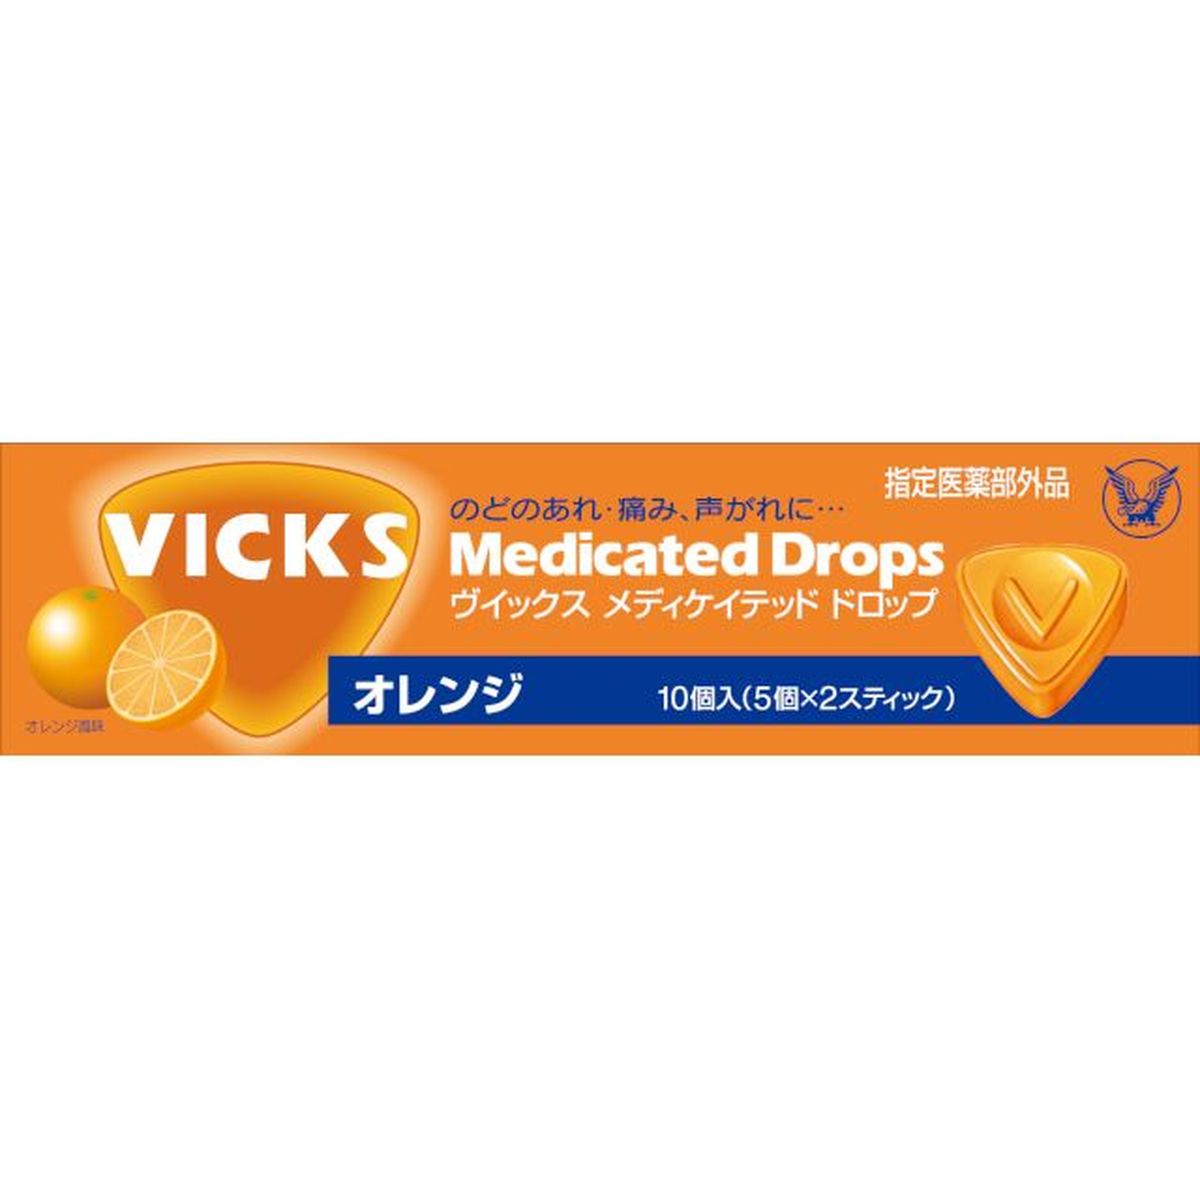 【10個入リ】大正製薬 ヴィックス メディケイテッド ドロップ オレンジ 10粒